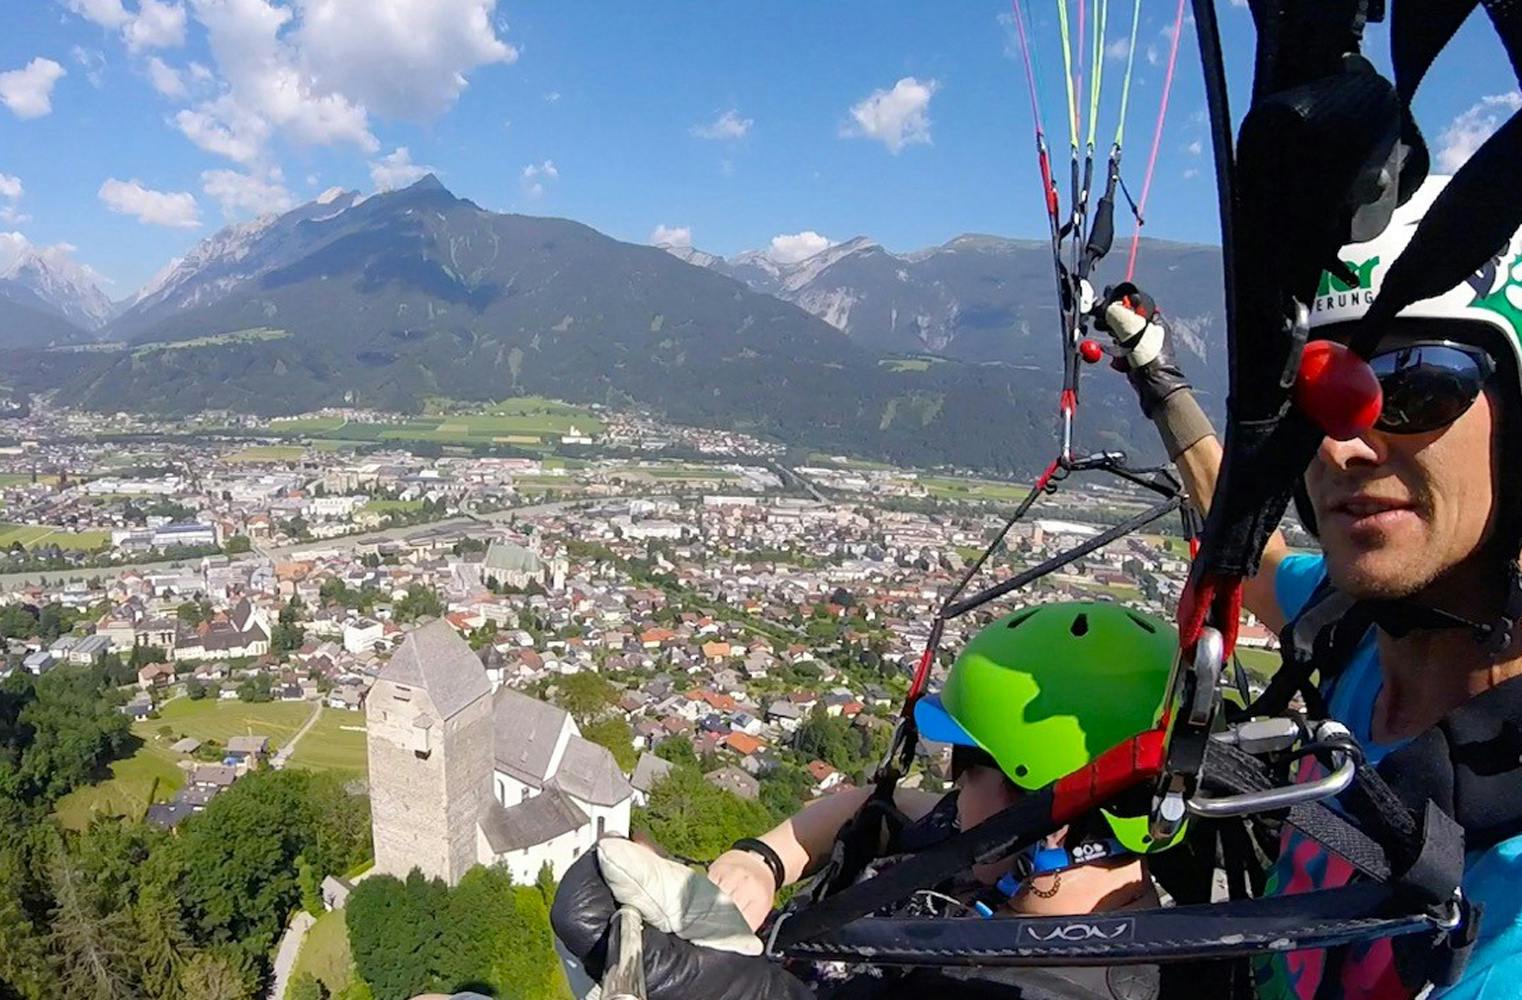 Gleitschirm Tandemflug | Tirol von oben erleben